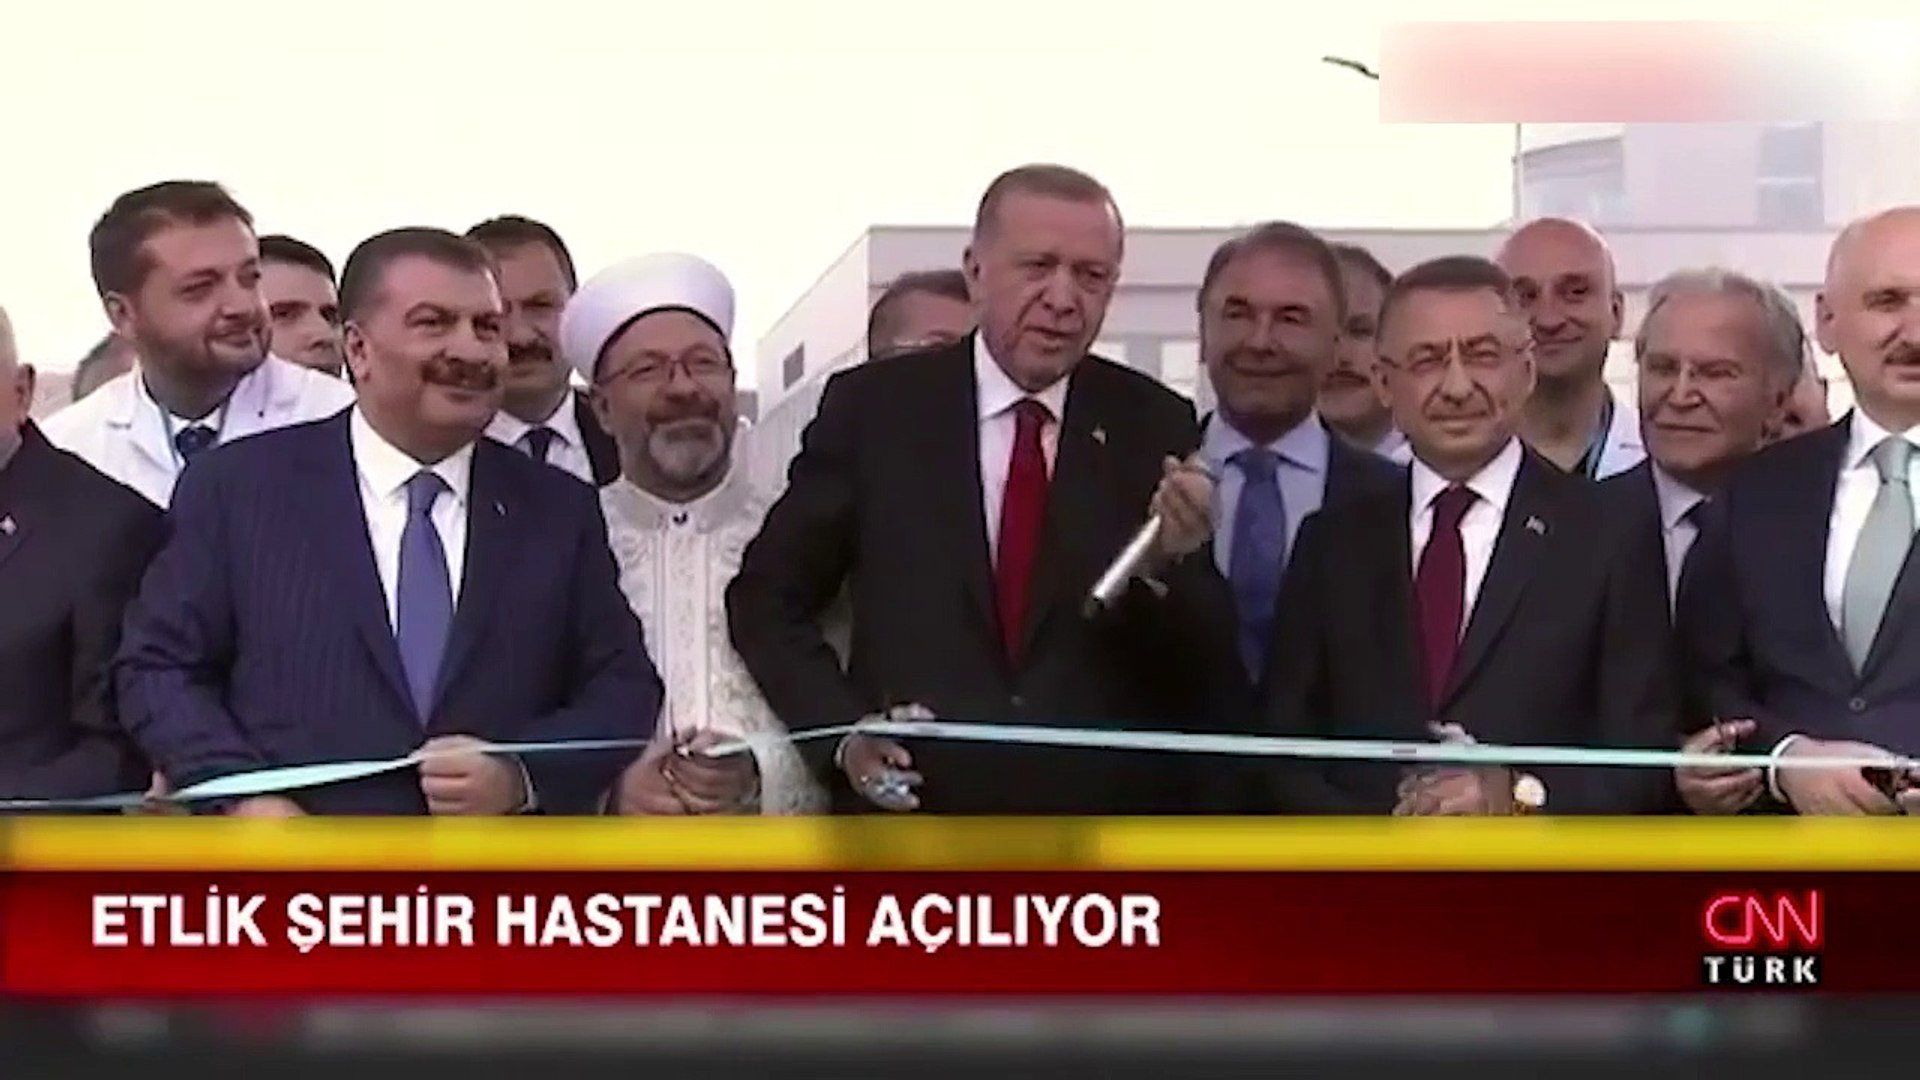 Erdoğan'ın Mansur Yavaş'a gönderme: Mansur Yavaş'tan yanıt gecikmedi